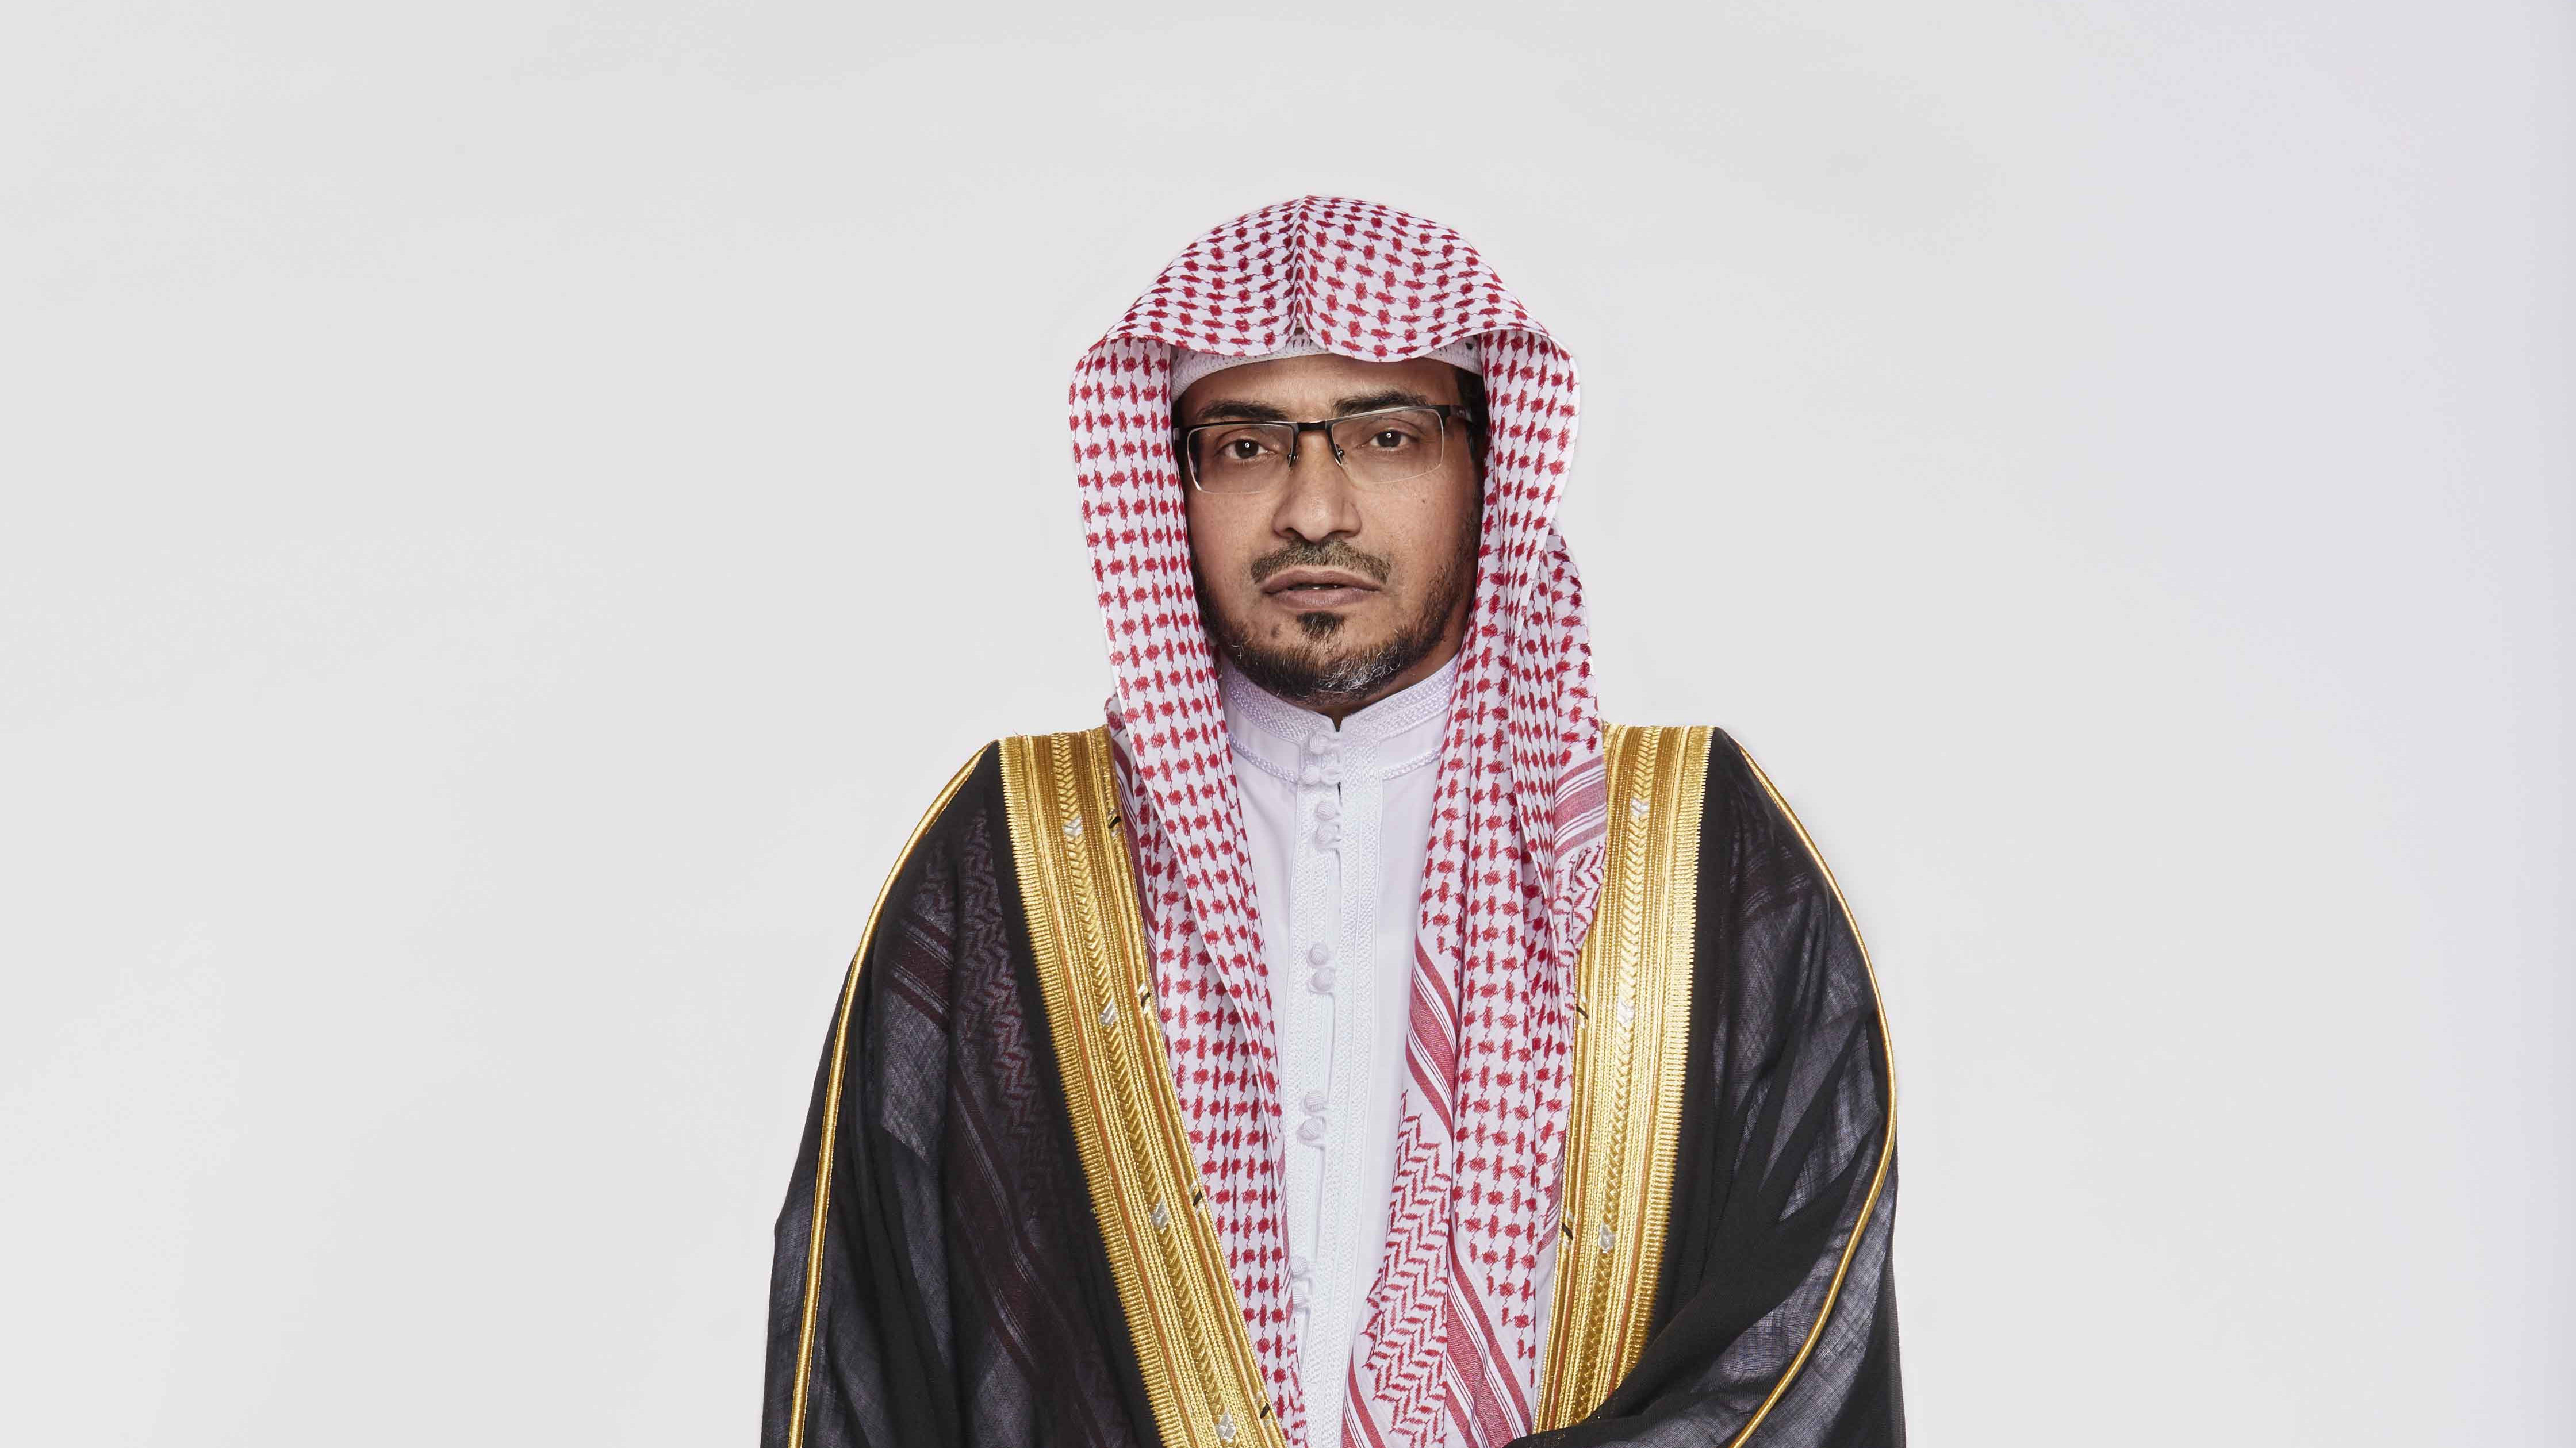 المغامسي ناعيًا الفقيد بندر بن عبدالعزيز : أمير البر والإحسان